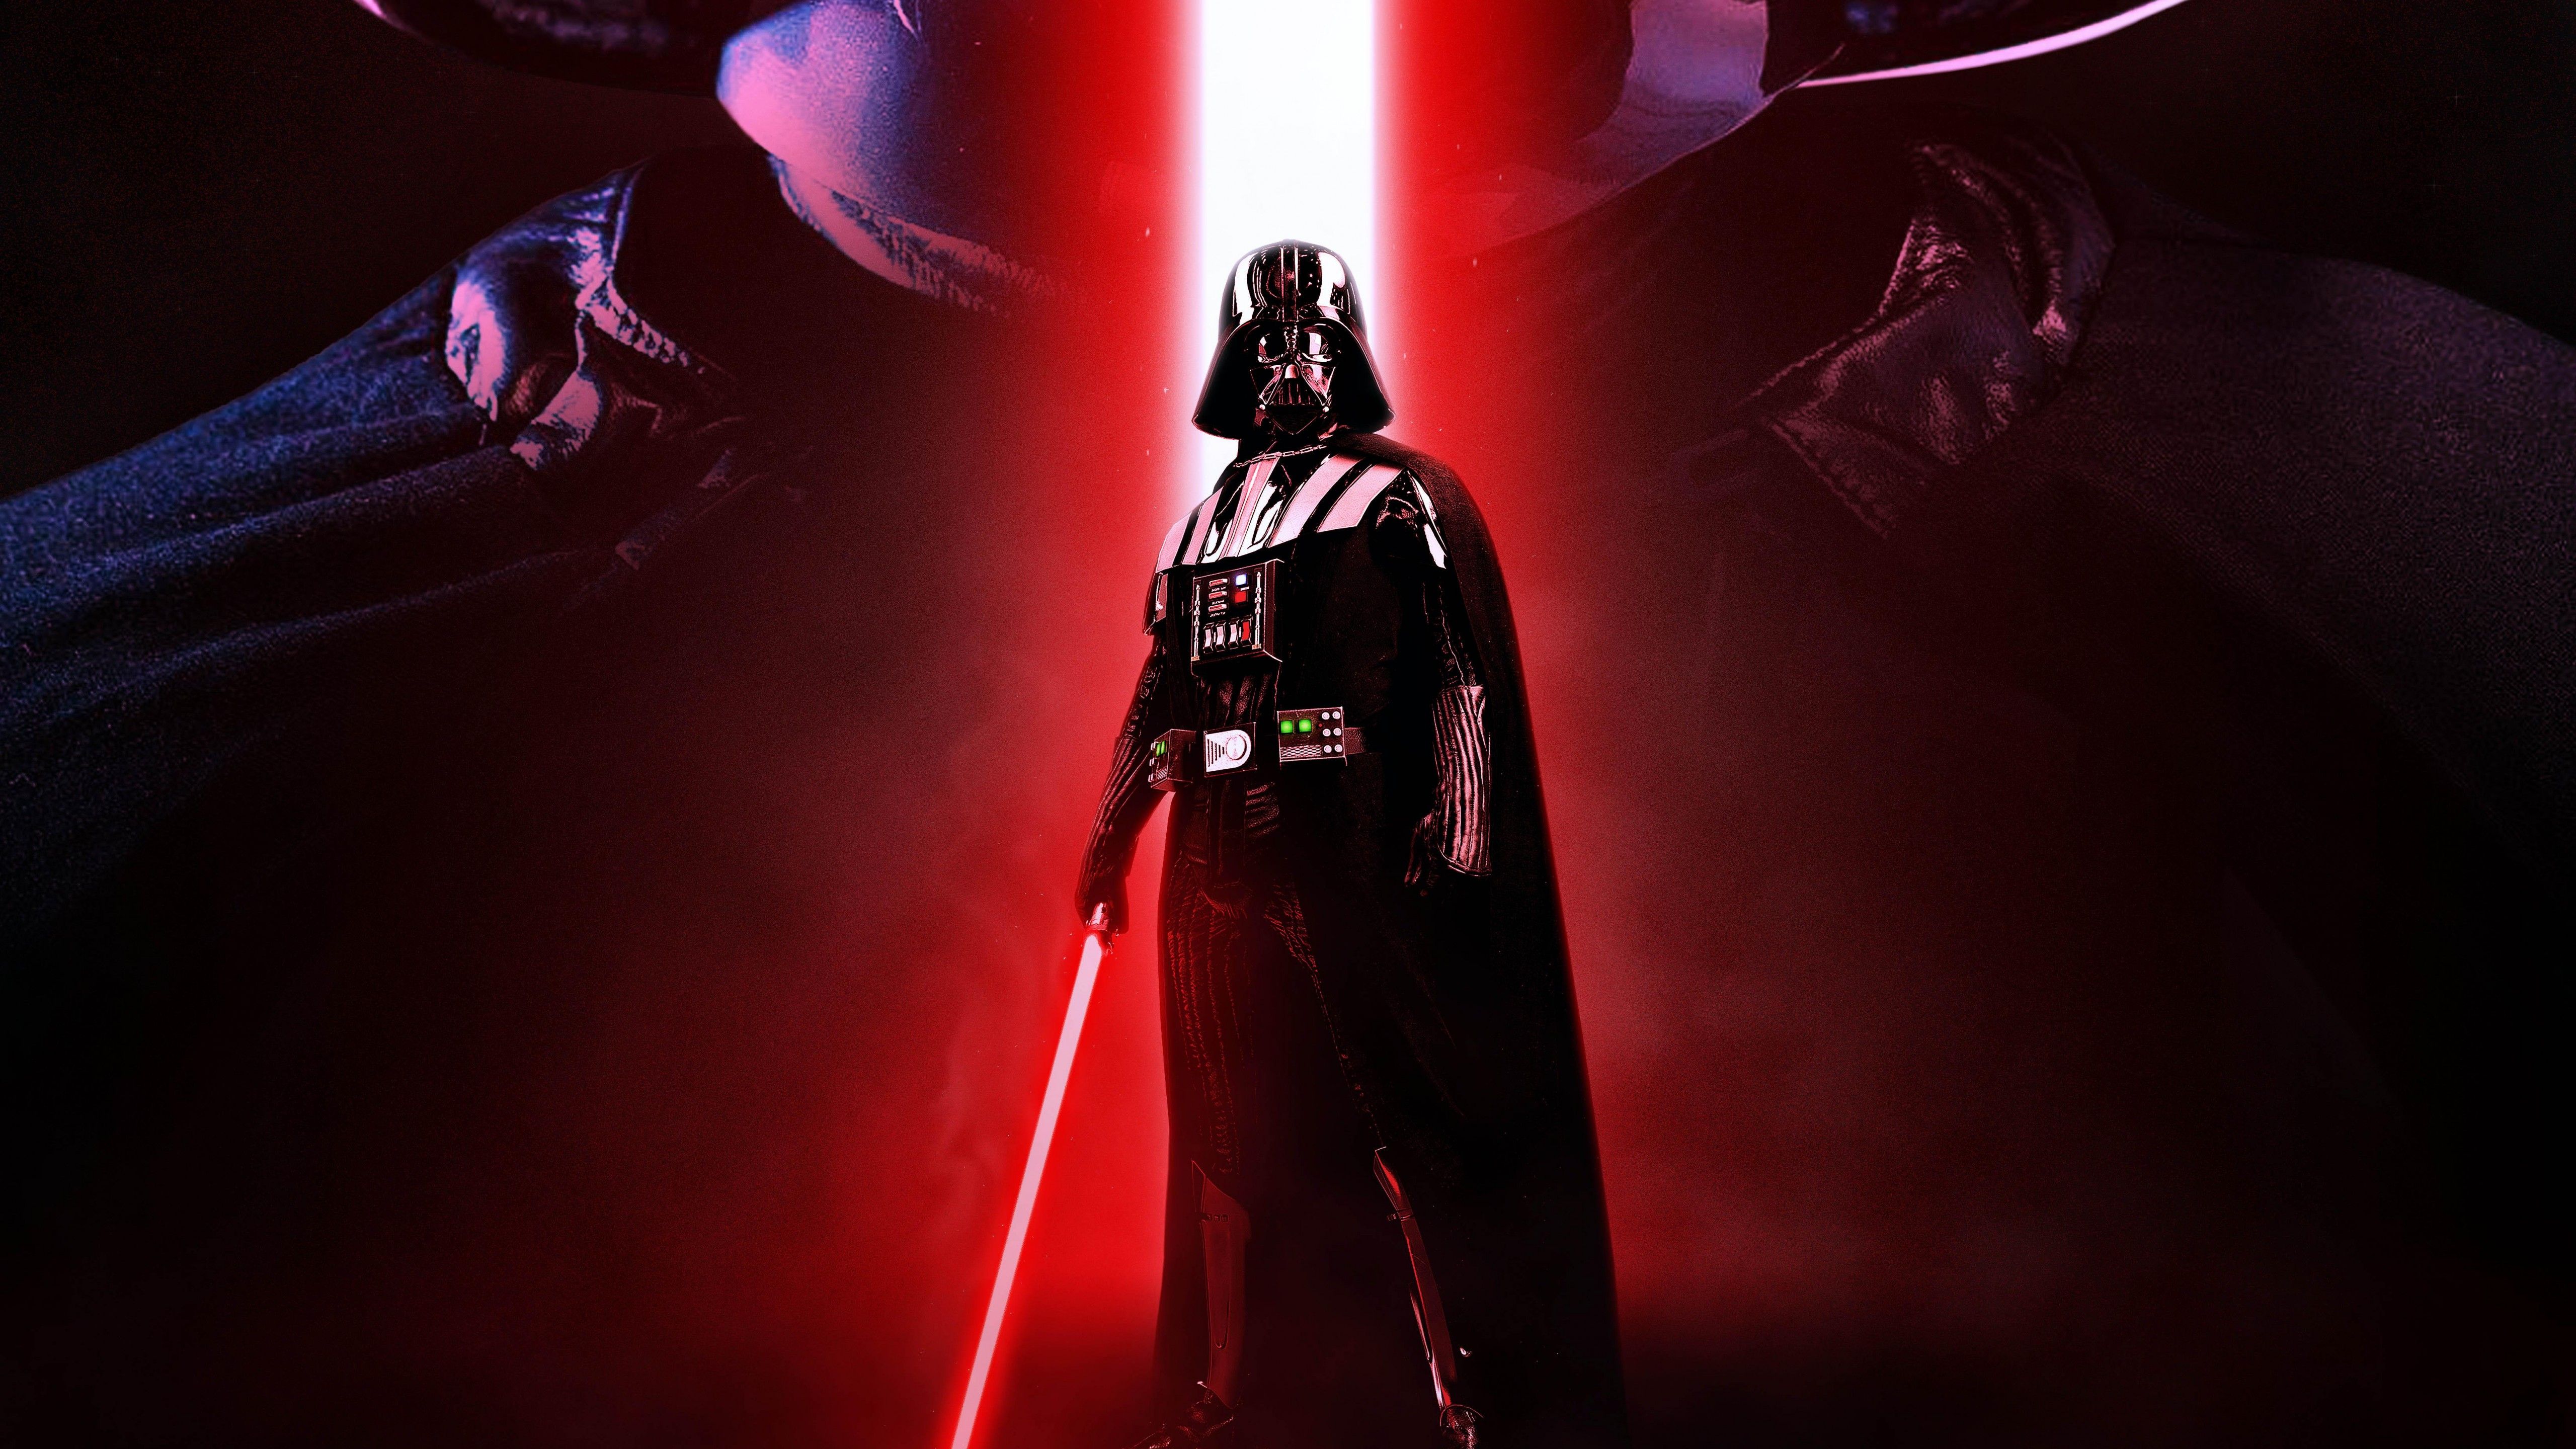 Darth Vader 4K Wallpaper, Sith lightsaber, Star Wars, 5K, Movies